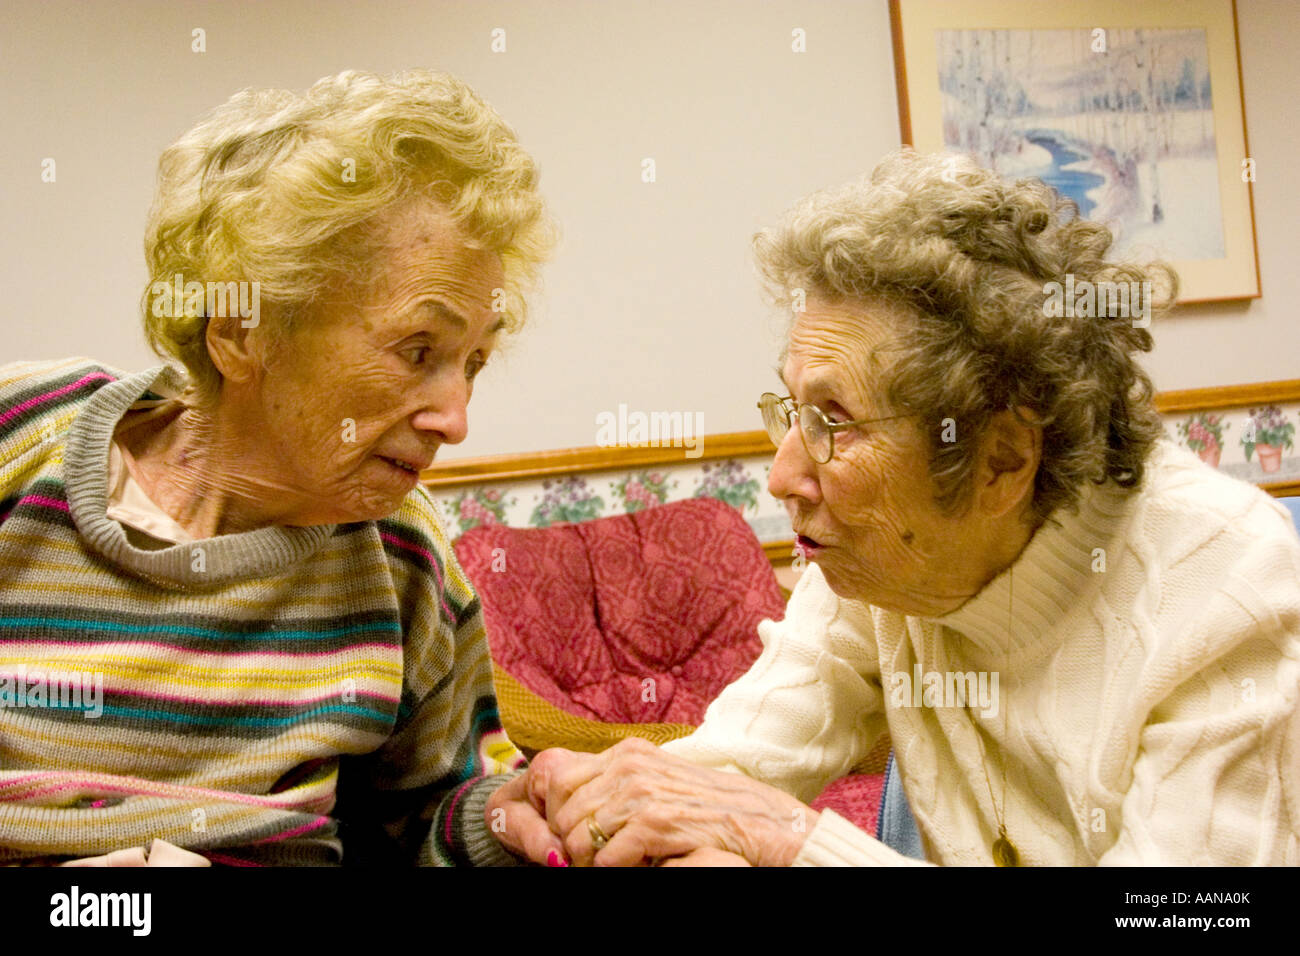 L'âge de 92 sœurs tente de communiquer et tenir la main dans la maison de soins infirmiers. Minnesota Bloomington Minnesota USA Accueil maçonnique Banque D'Images